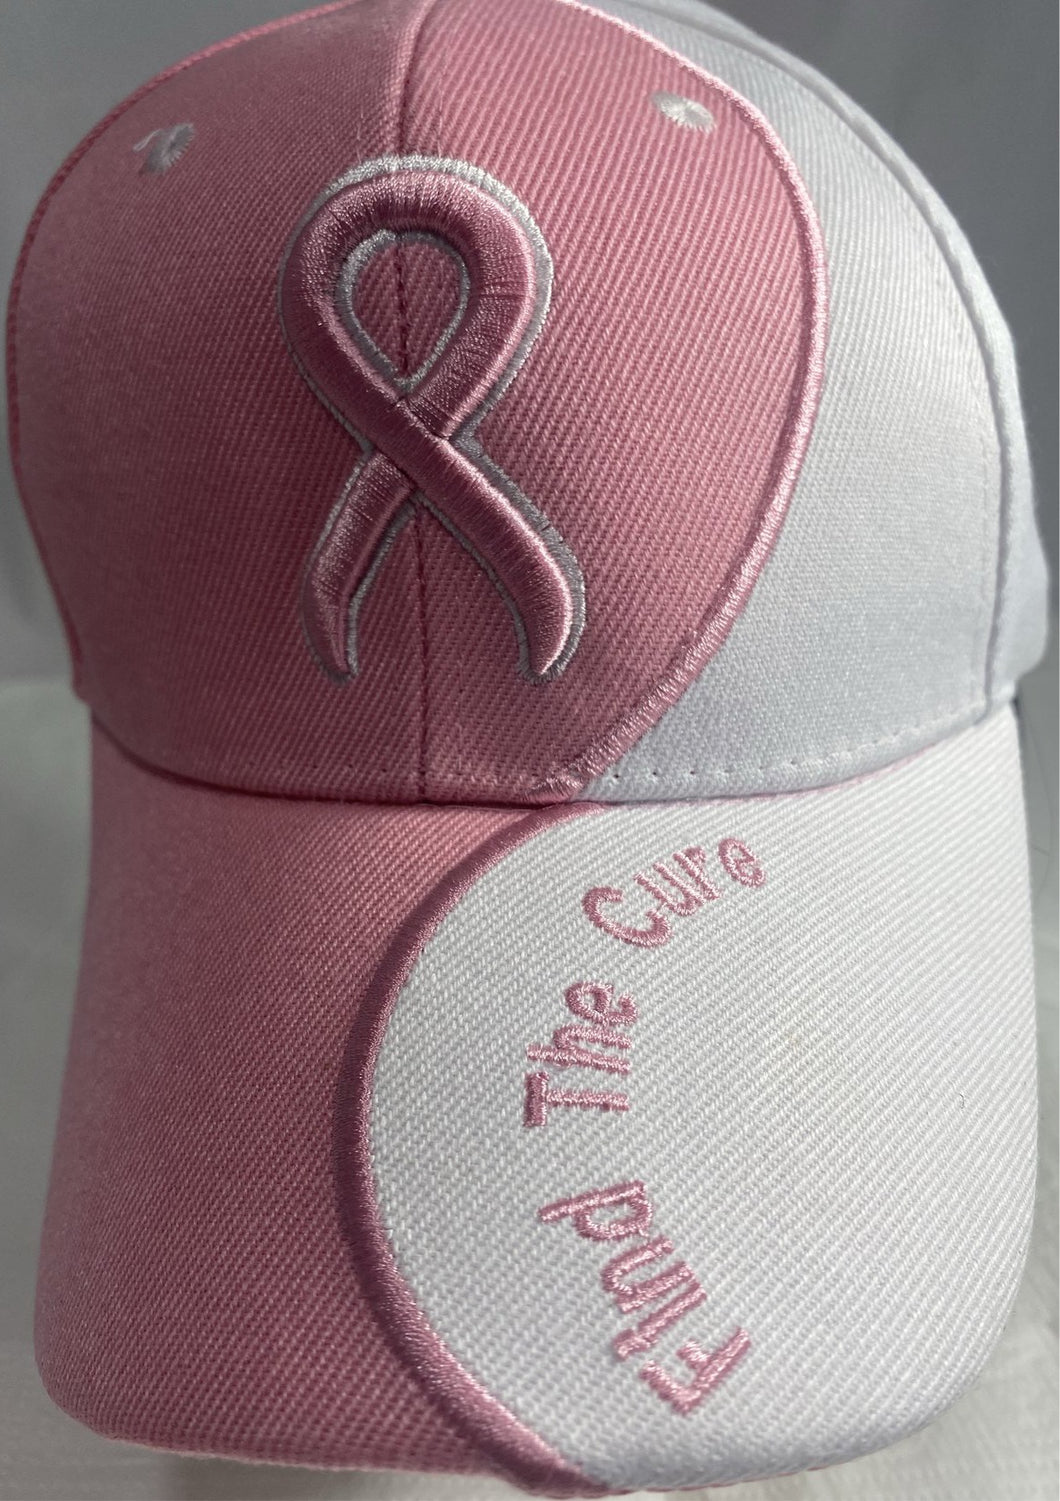 PINK CANCER AWARENESS CAP